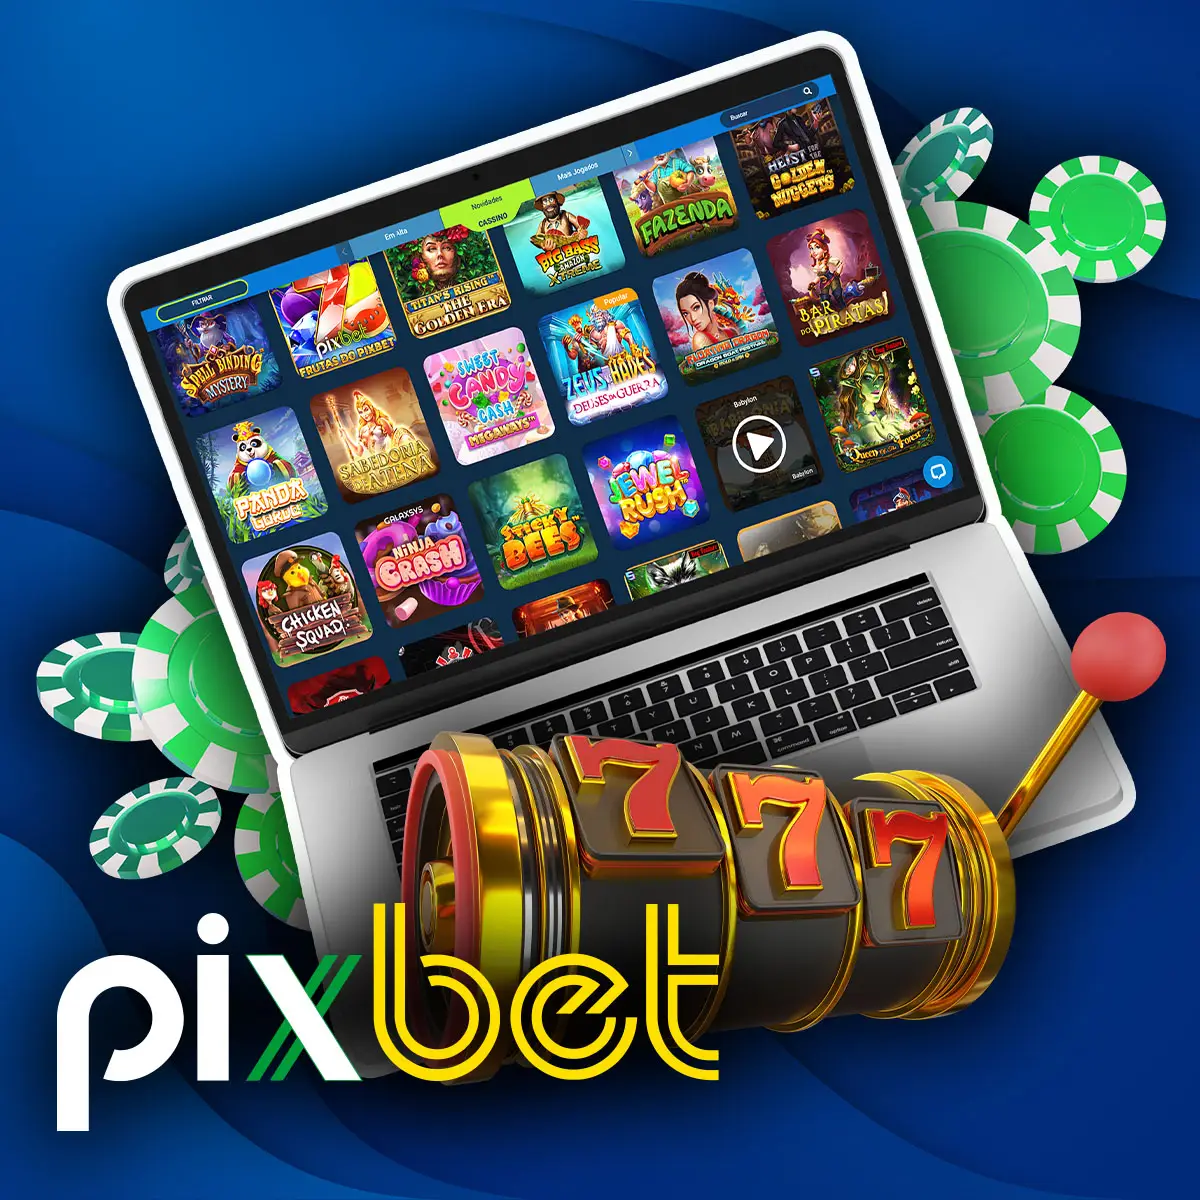 Pixbet Grátis: Como fazer apostas gratuitas neste site de apostas?